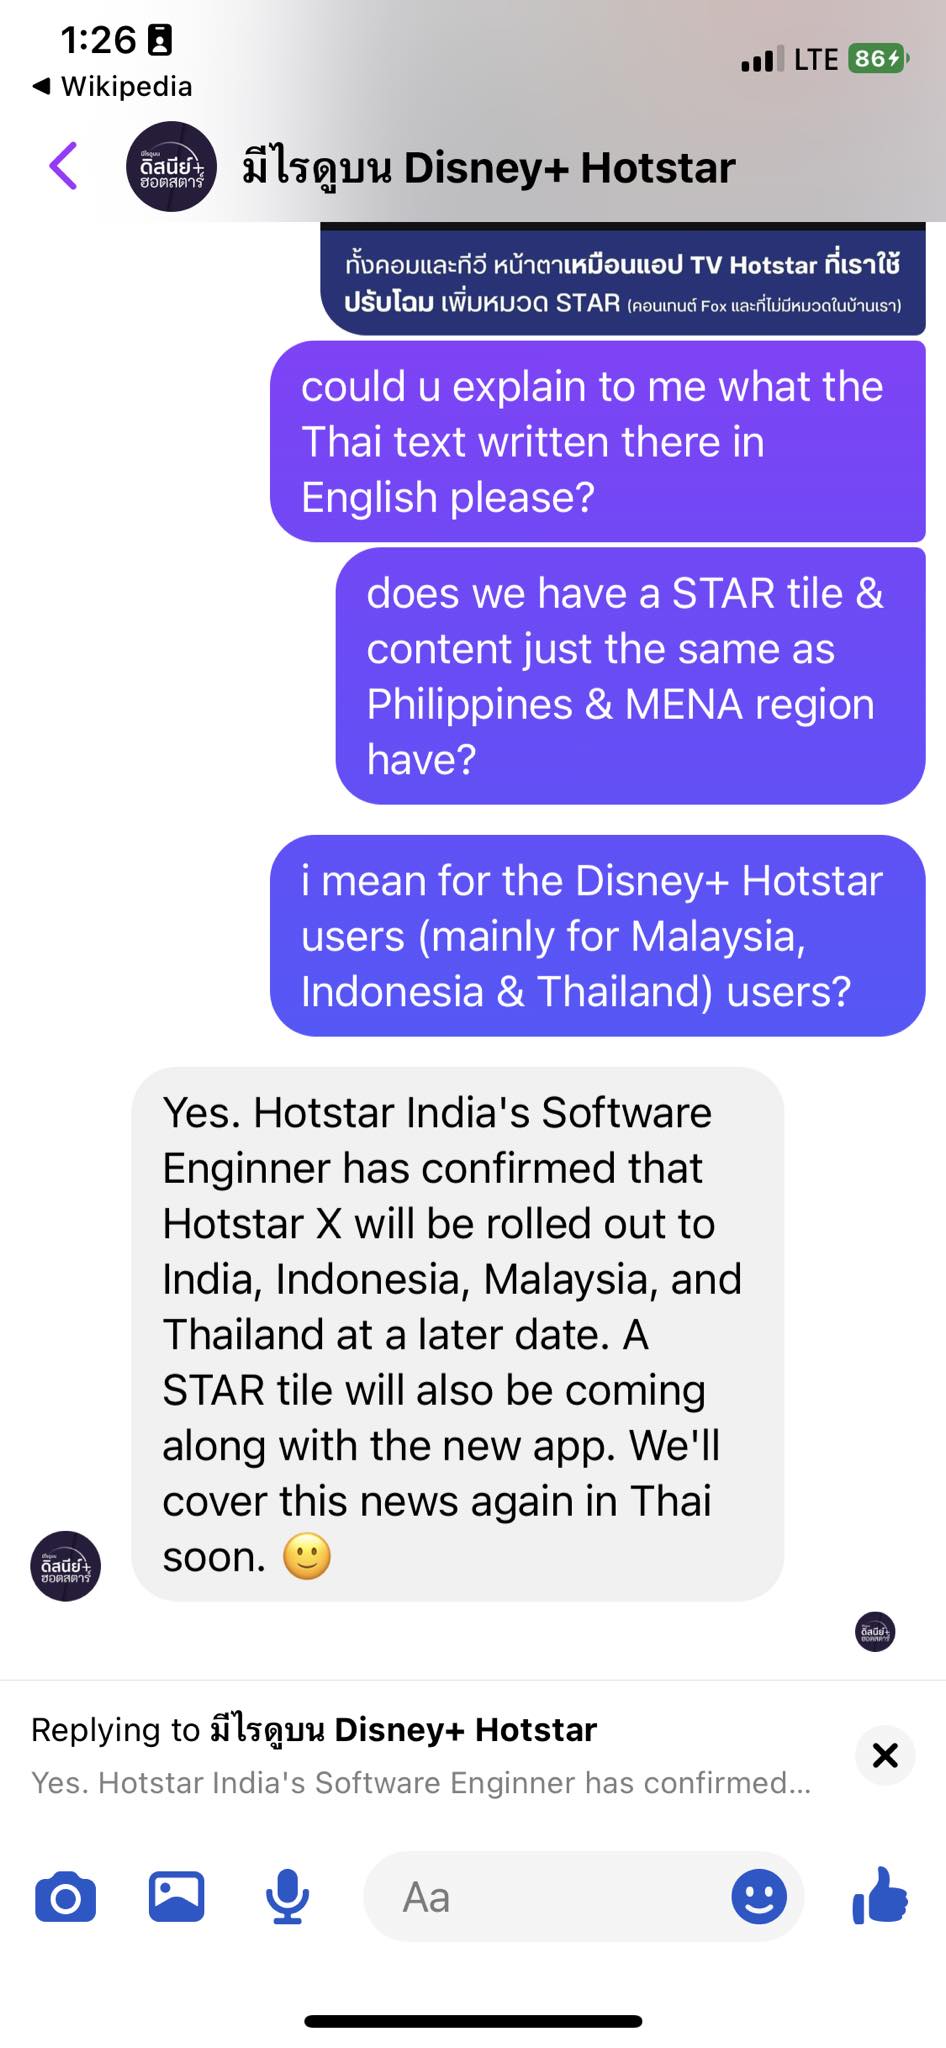 la aplicación disney+ hotstar se actualizará pronto a una nueva versión de hotstar x